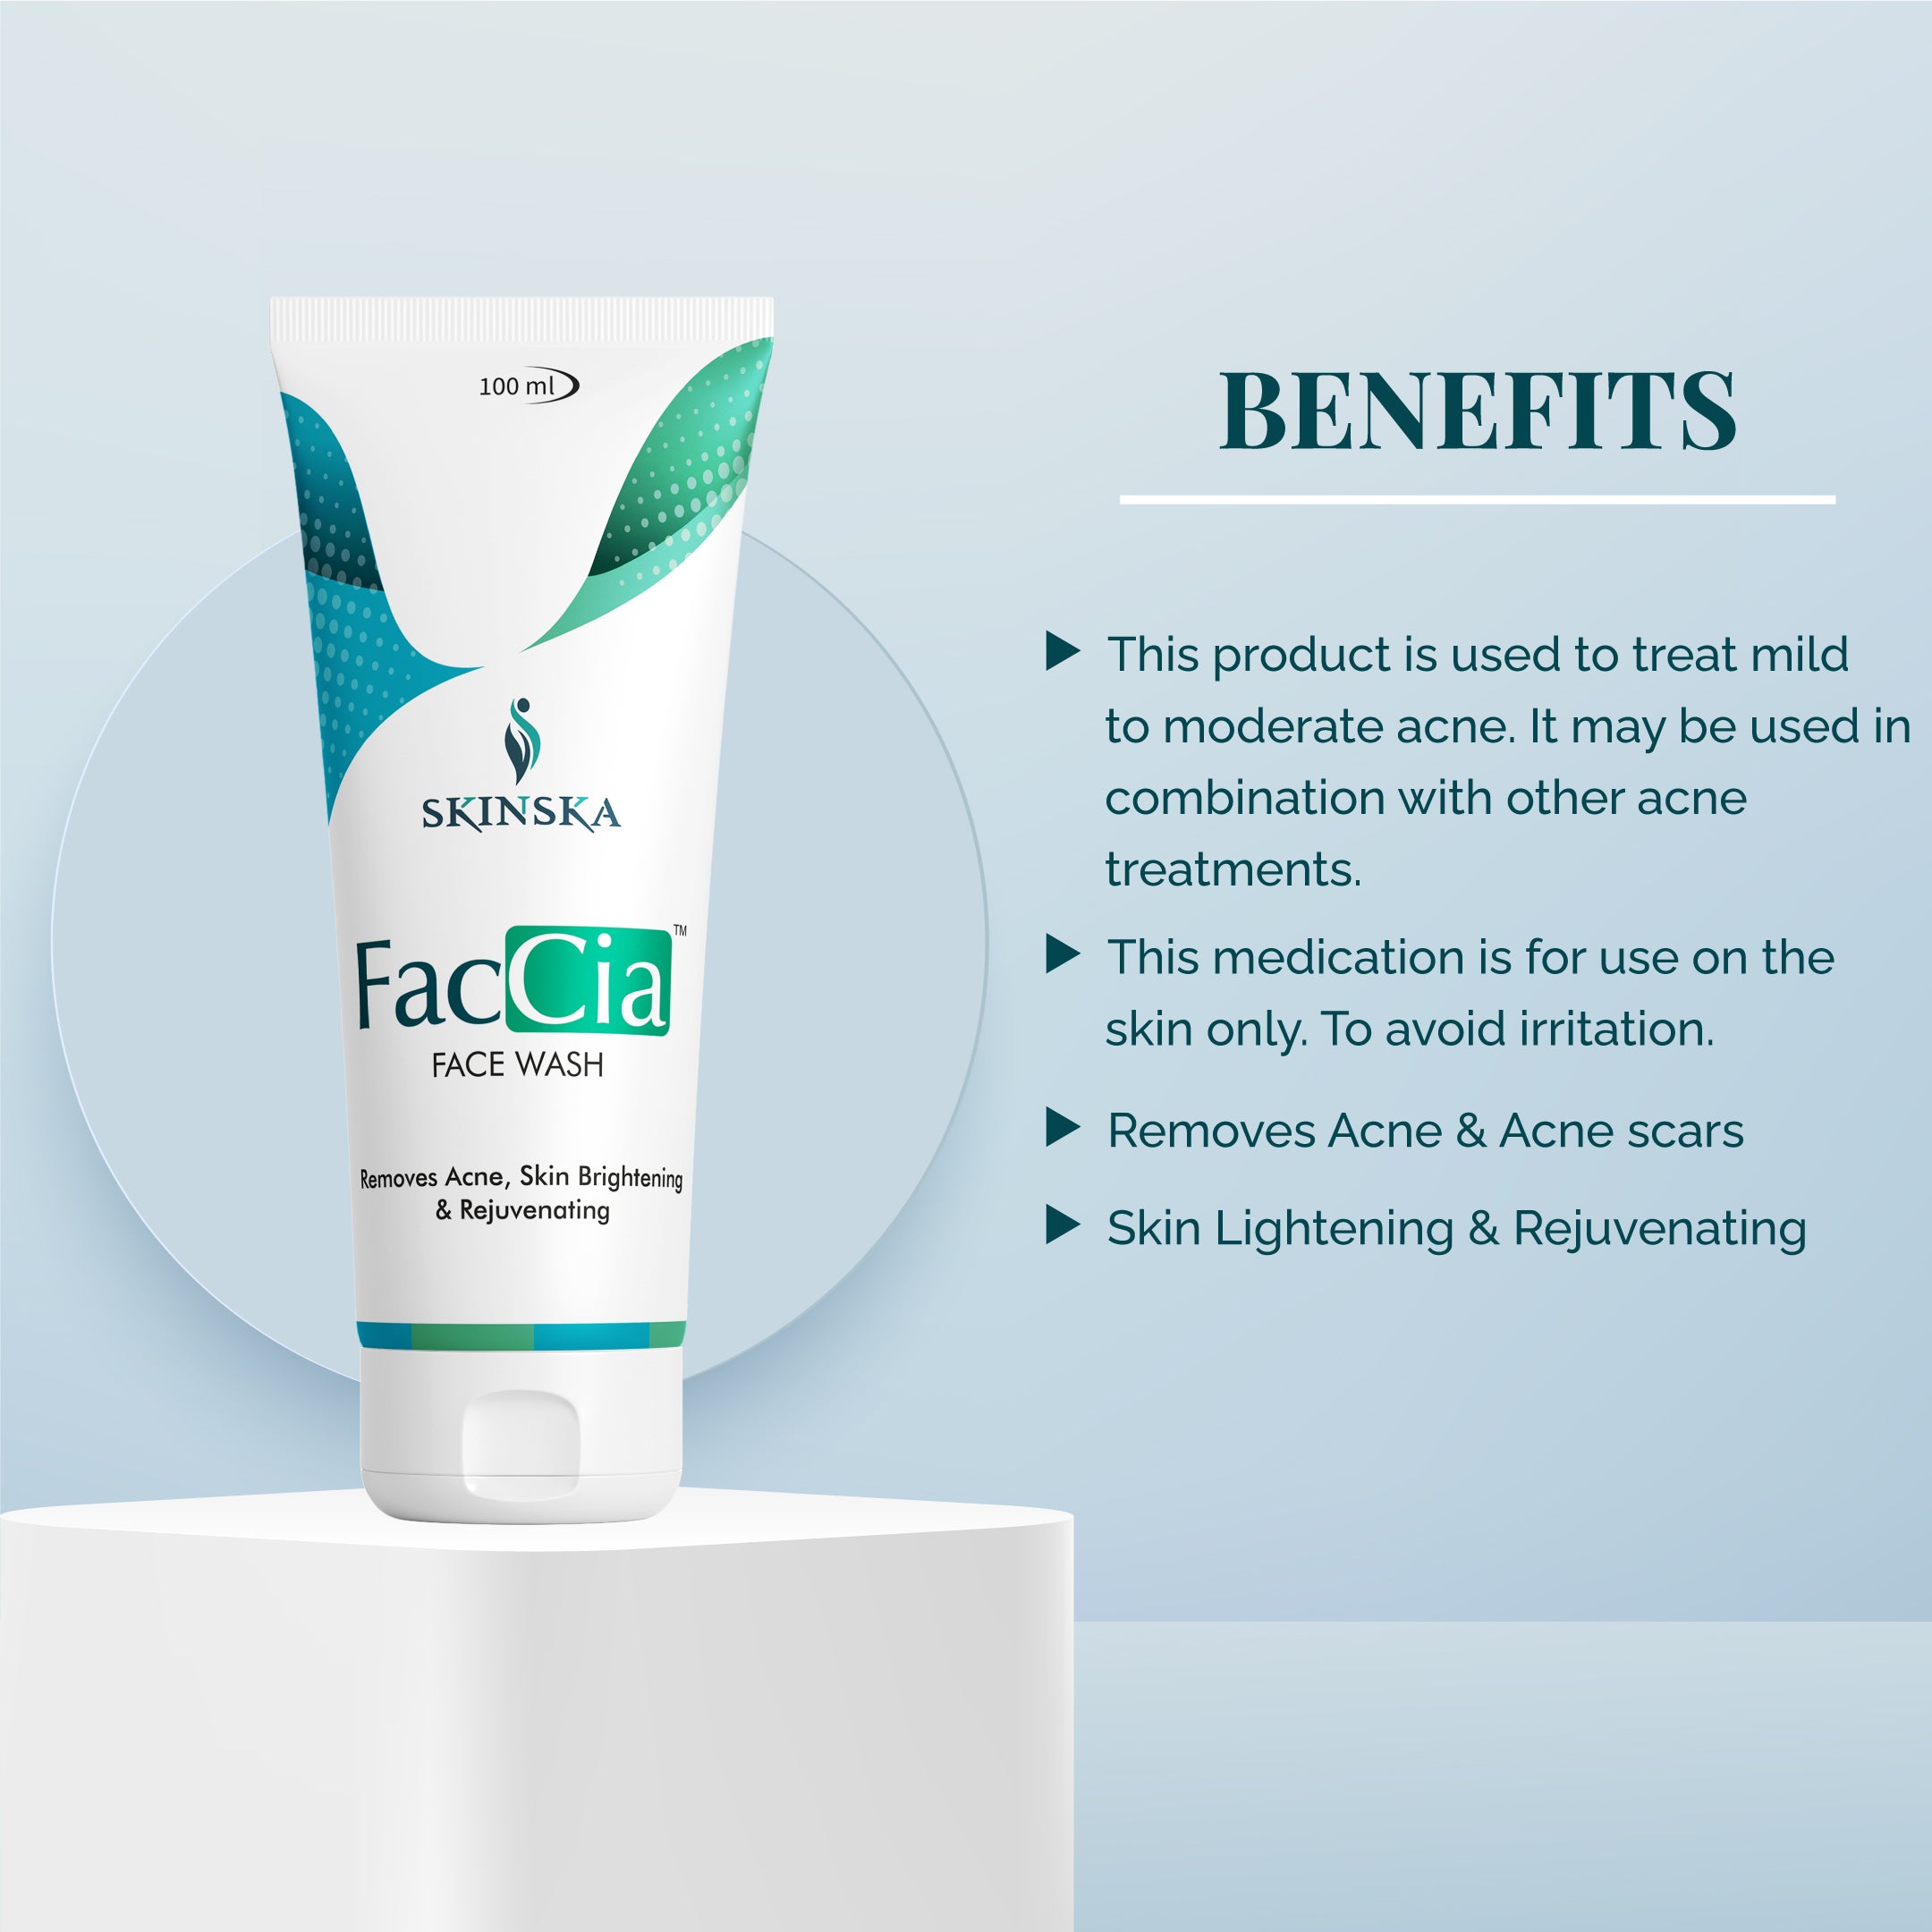 Faccia Anti Acne face wash with glycolic acid, vitamin E and aloe vera extracts to fight acne